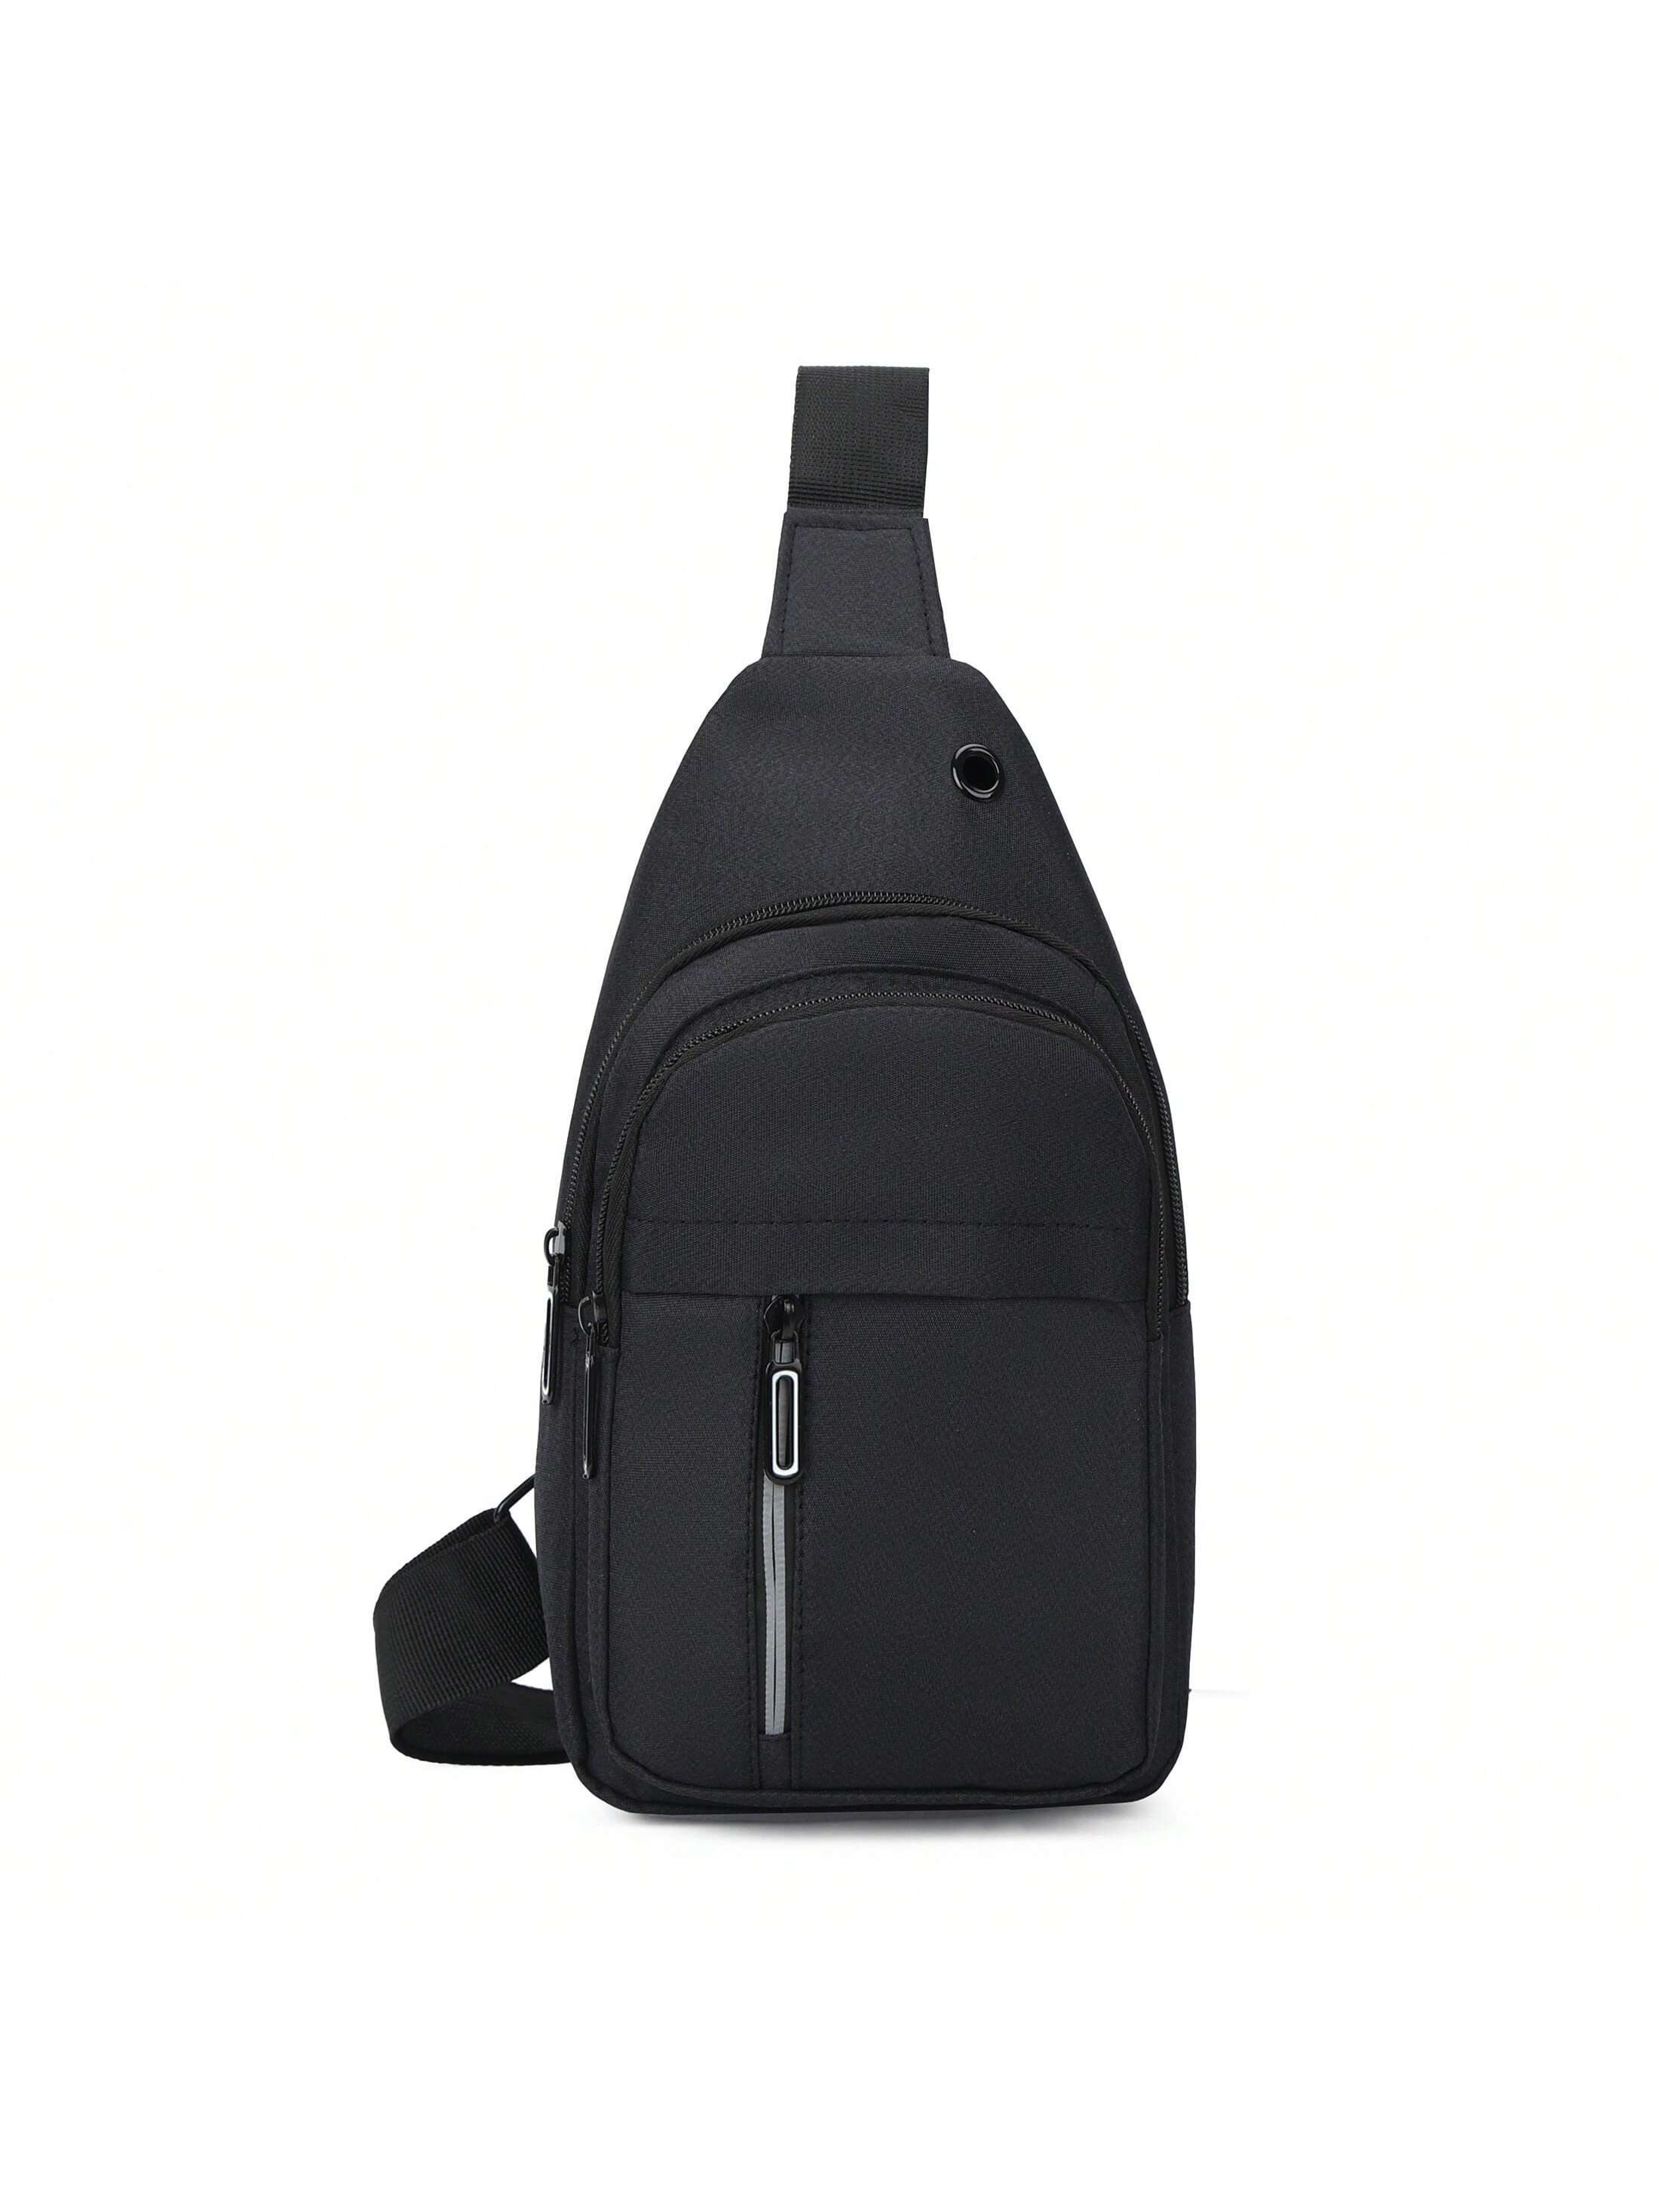 1 шт. однотонная нагрудная сумка на молнии, черный многофункциональная тактическая кобура через плечо наплечная сумка мужская нагрудная сумка с защитой от кражи кожаная уличная спортивна